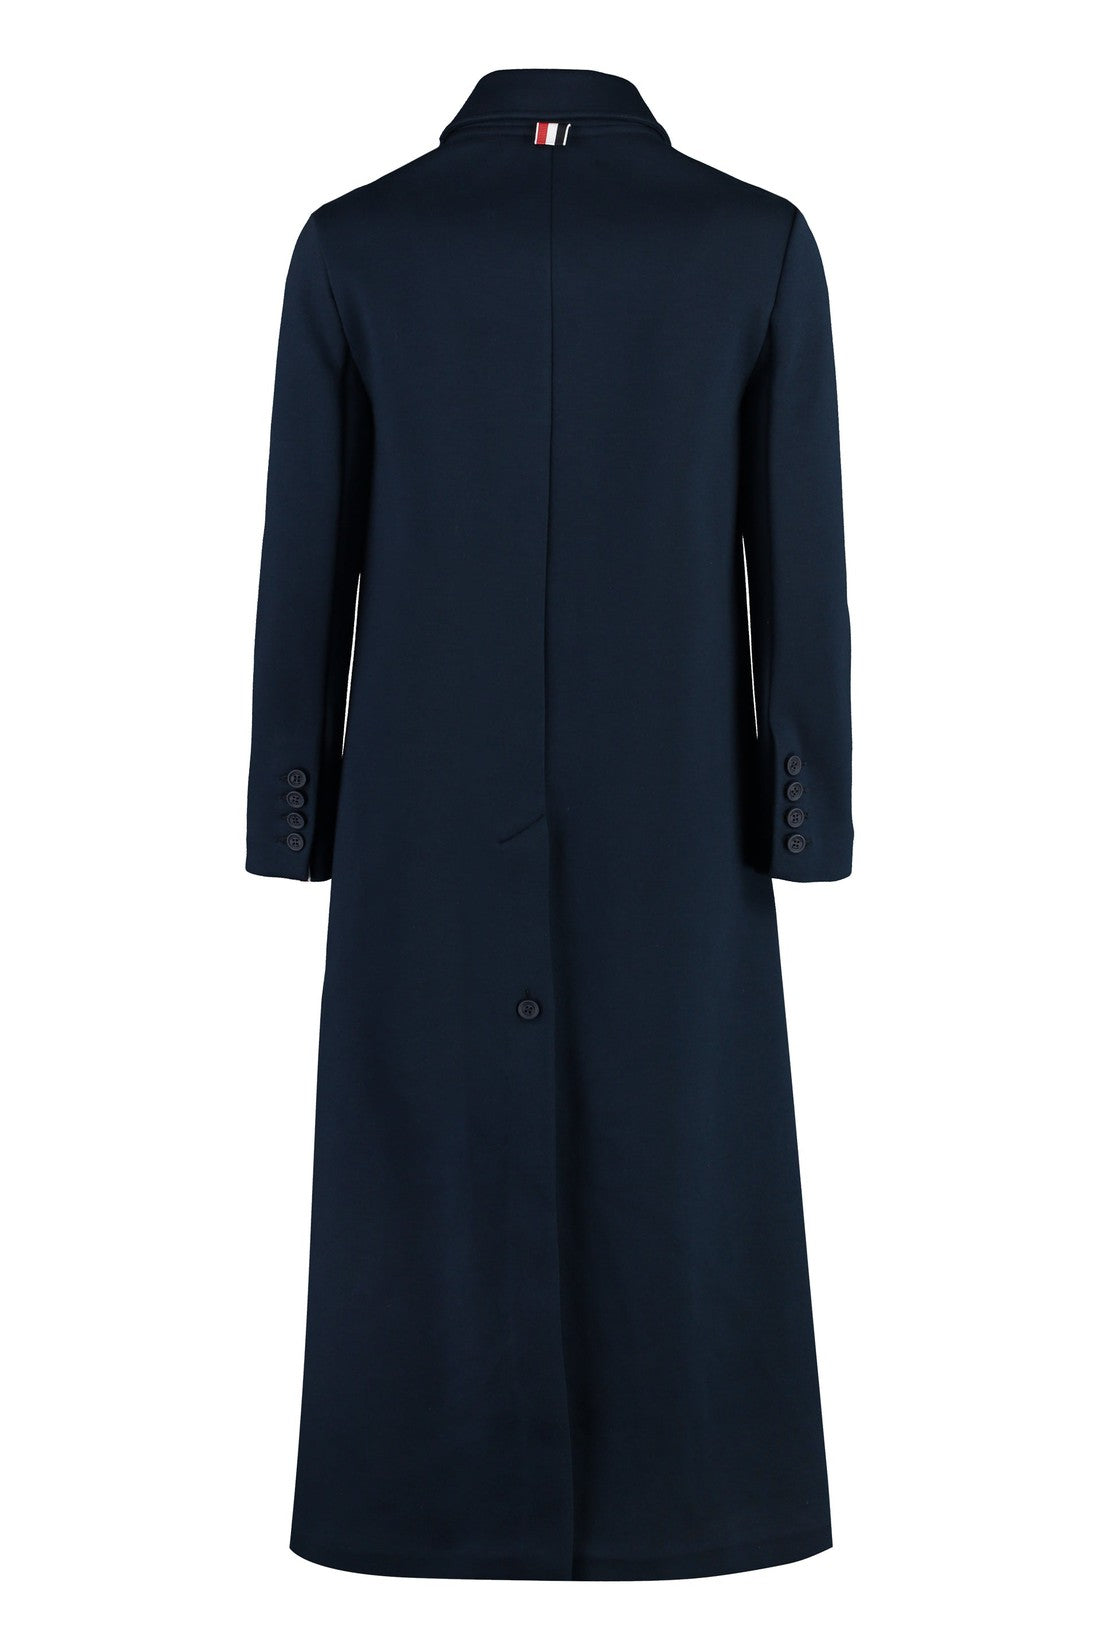 Thom Browne-OUTLET-SALE-Cotton coat-ARCHIVIST